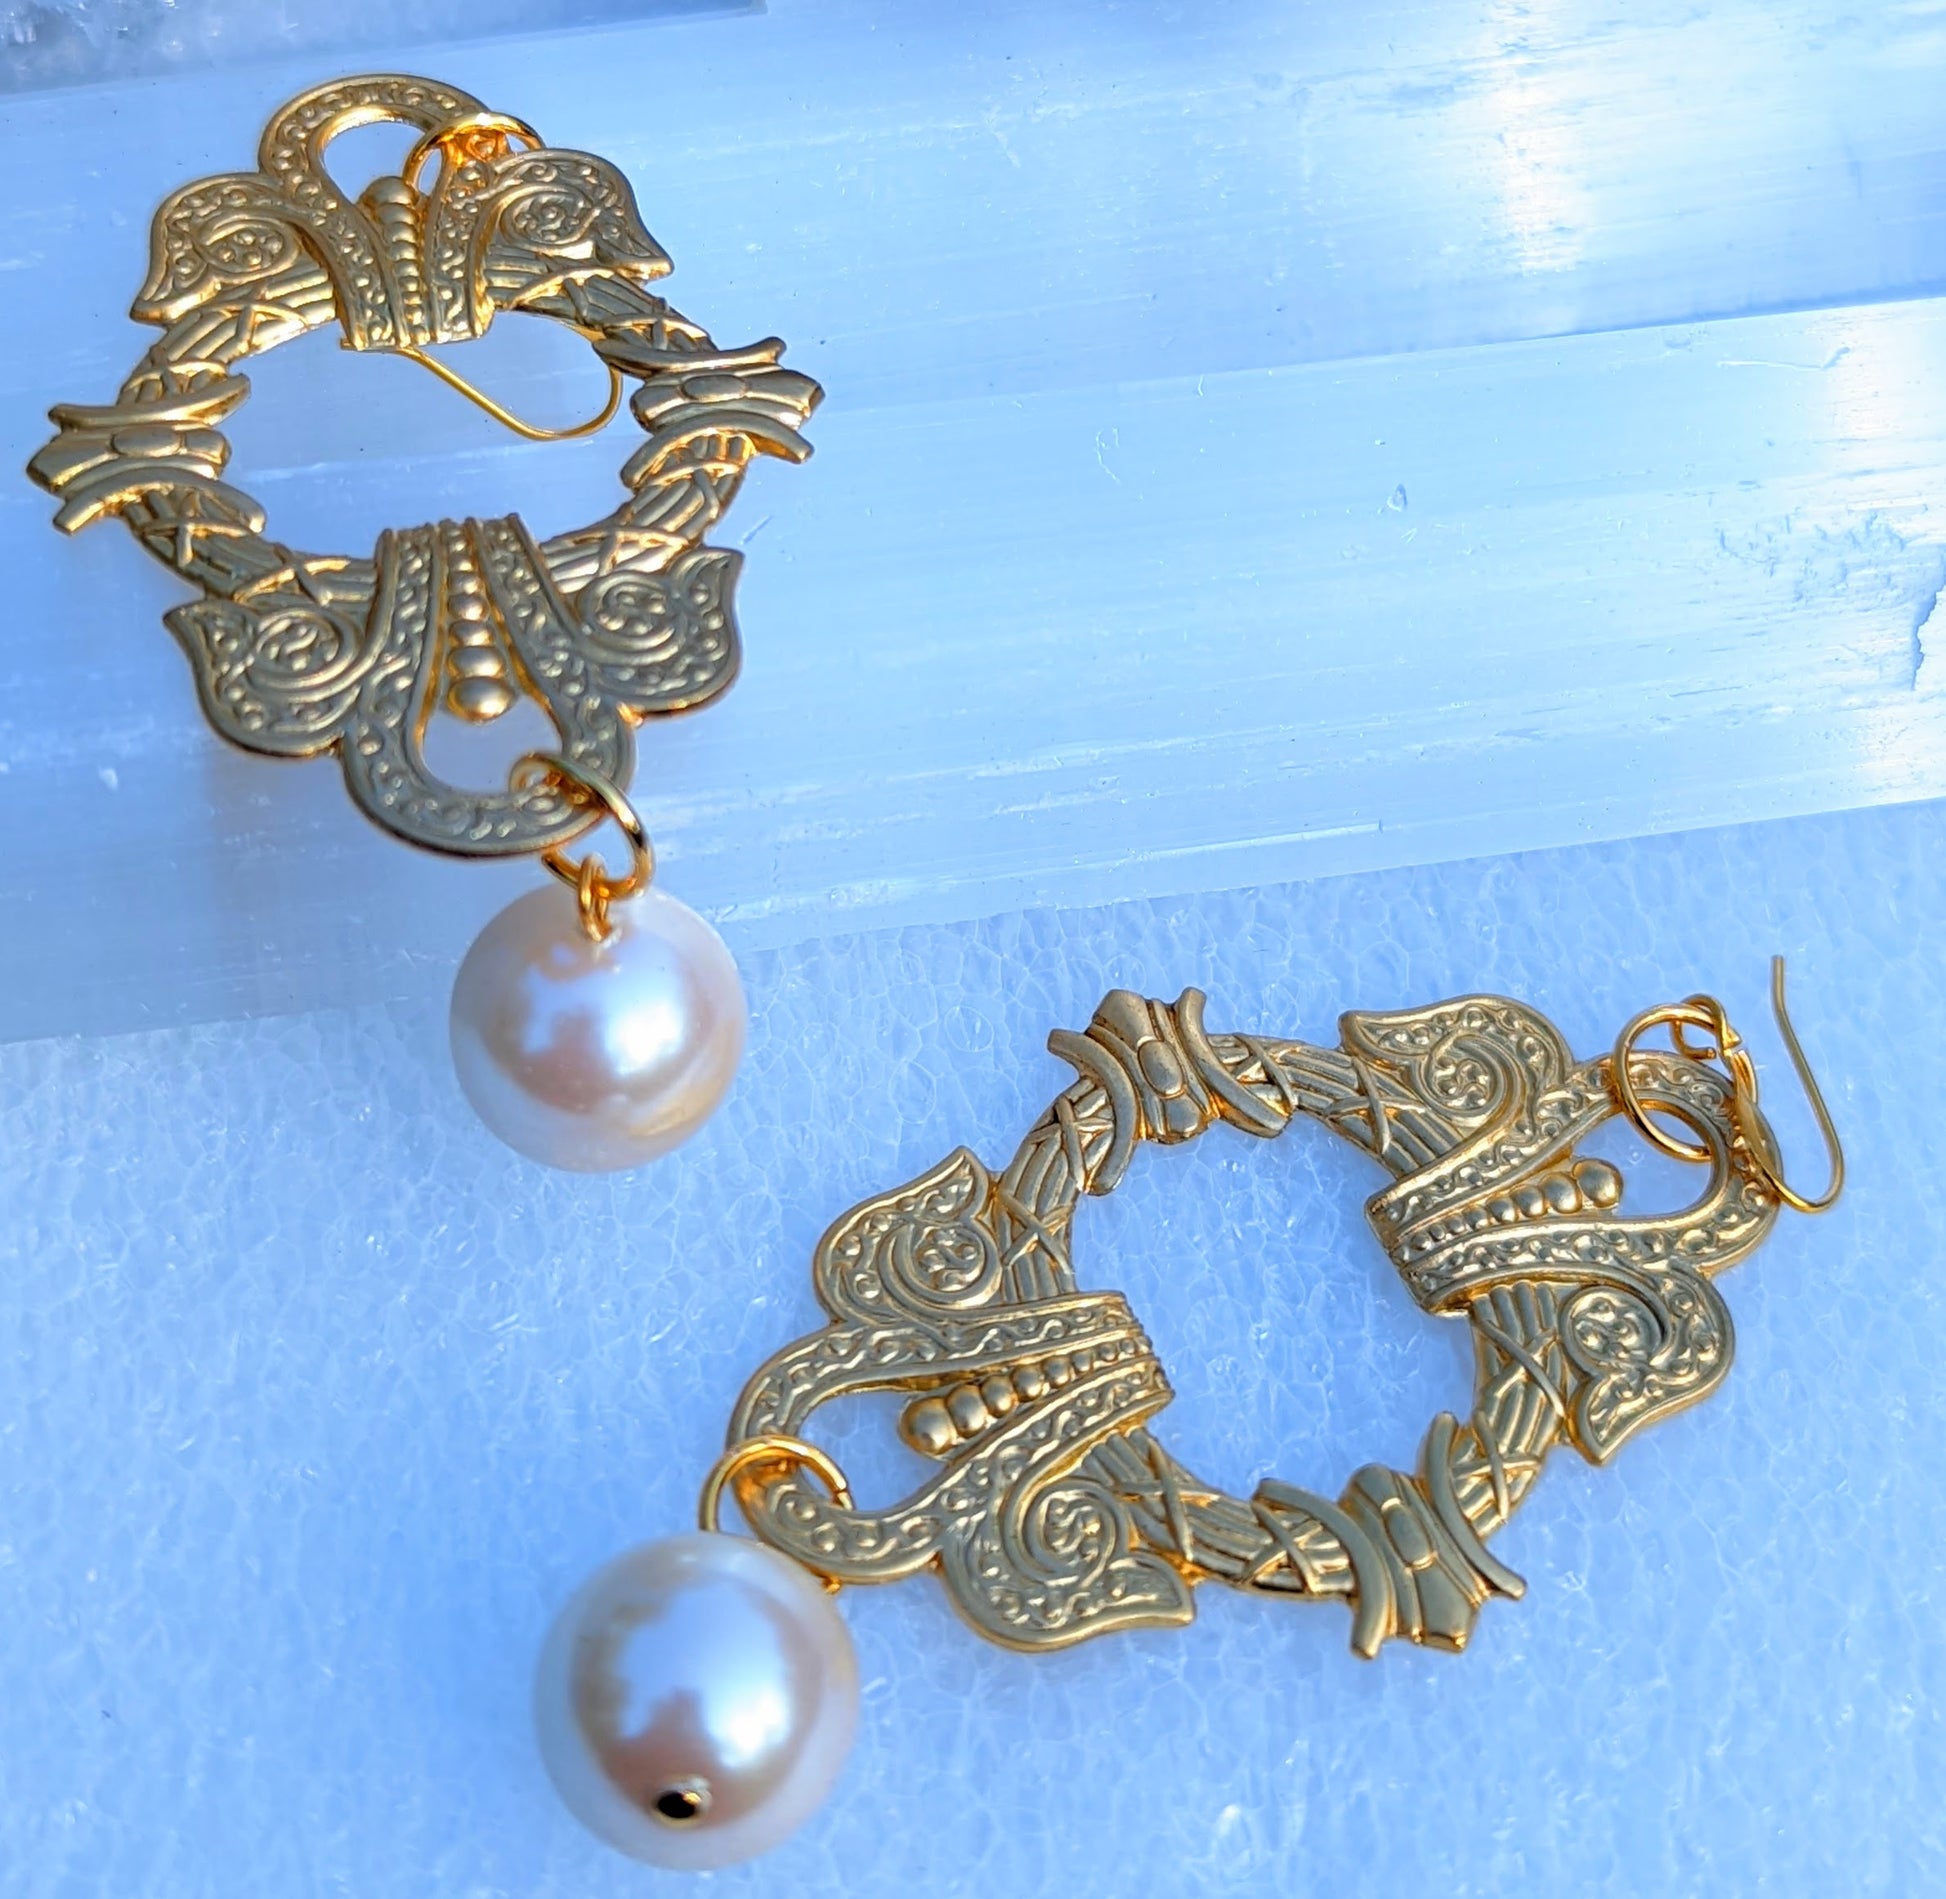 Elizabeth HRM Earrings Brass Pressings Vintage Pearls USA Made Gay Isber Free Gift Bag Regal-Gay Isber Designs